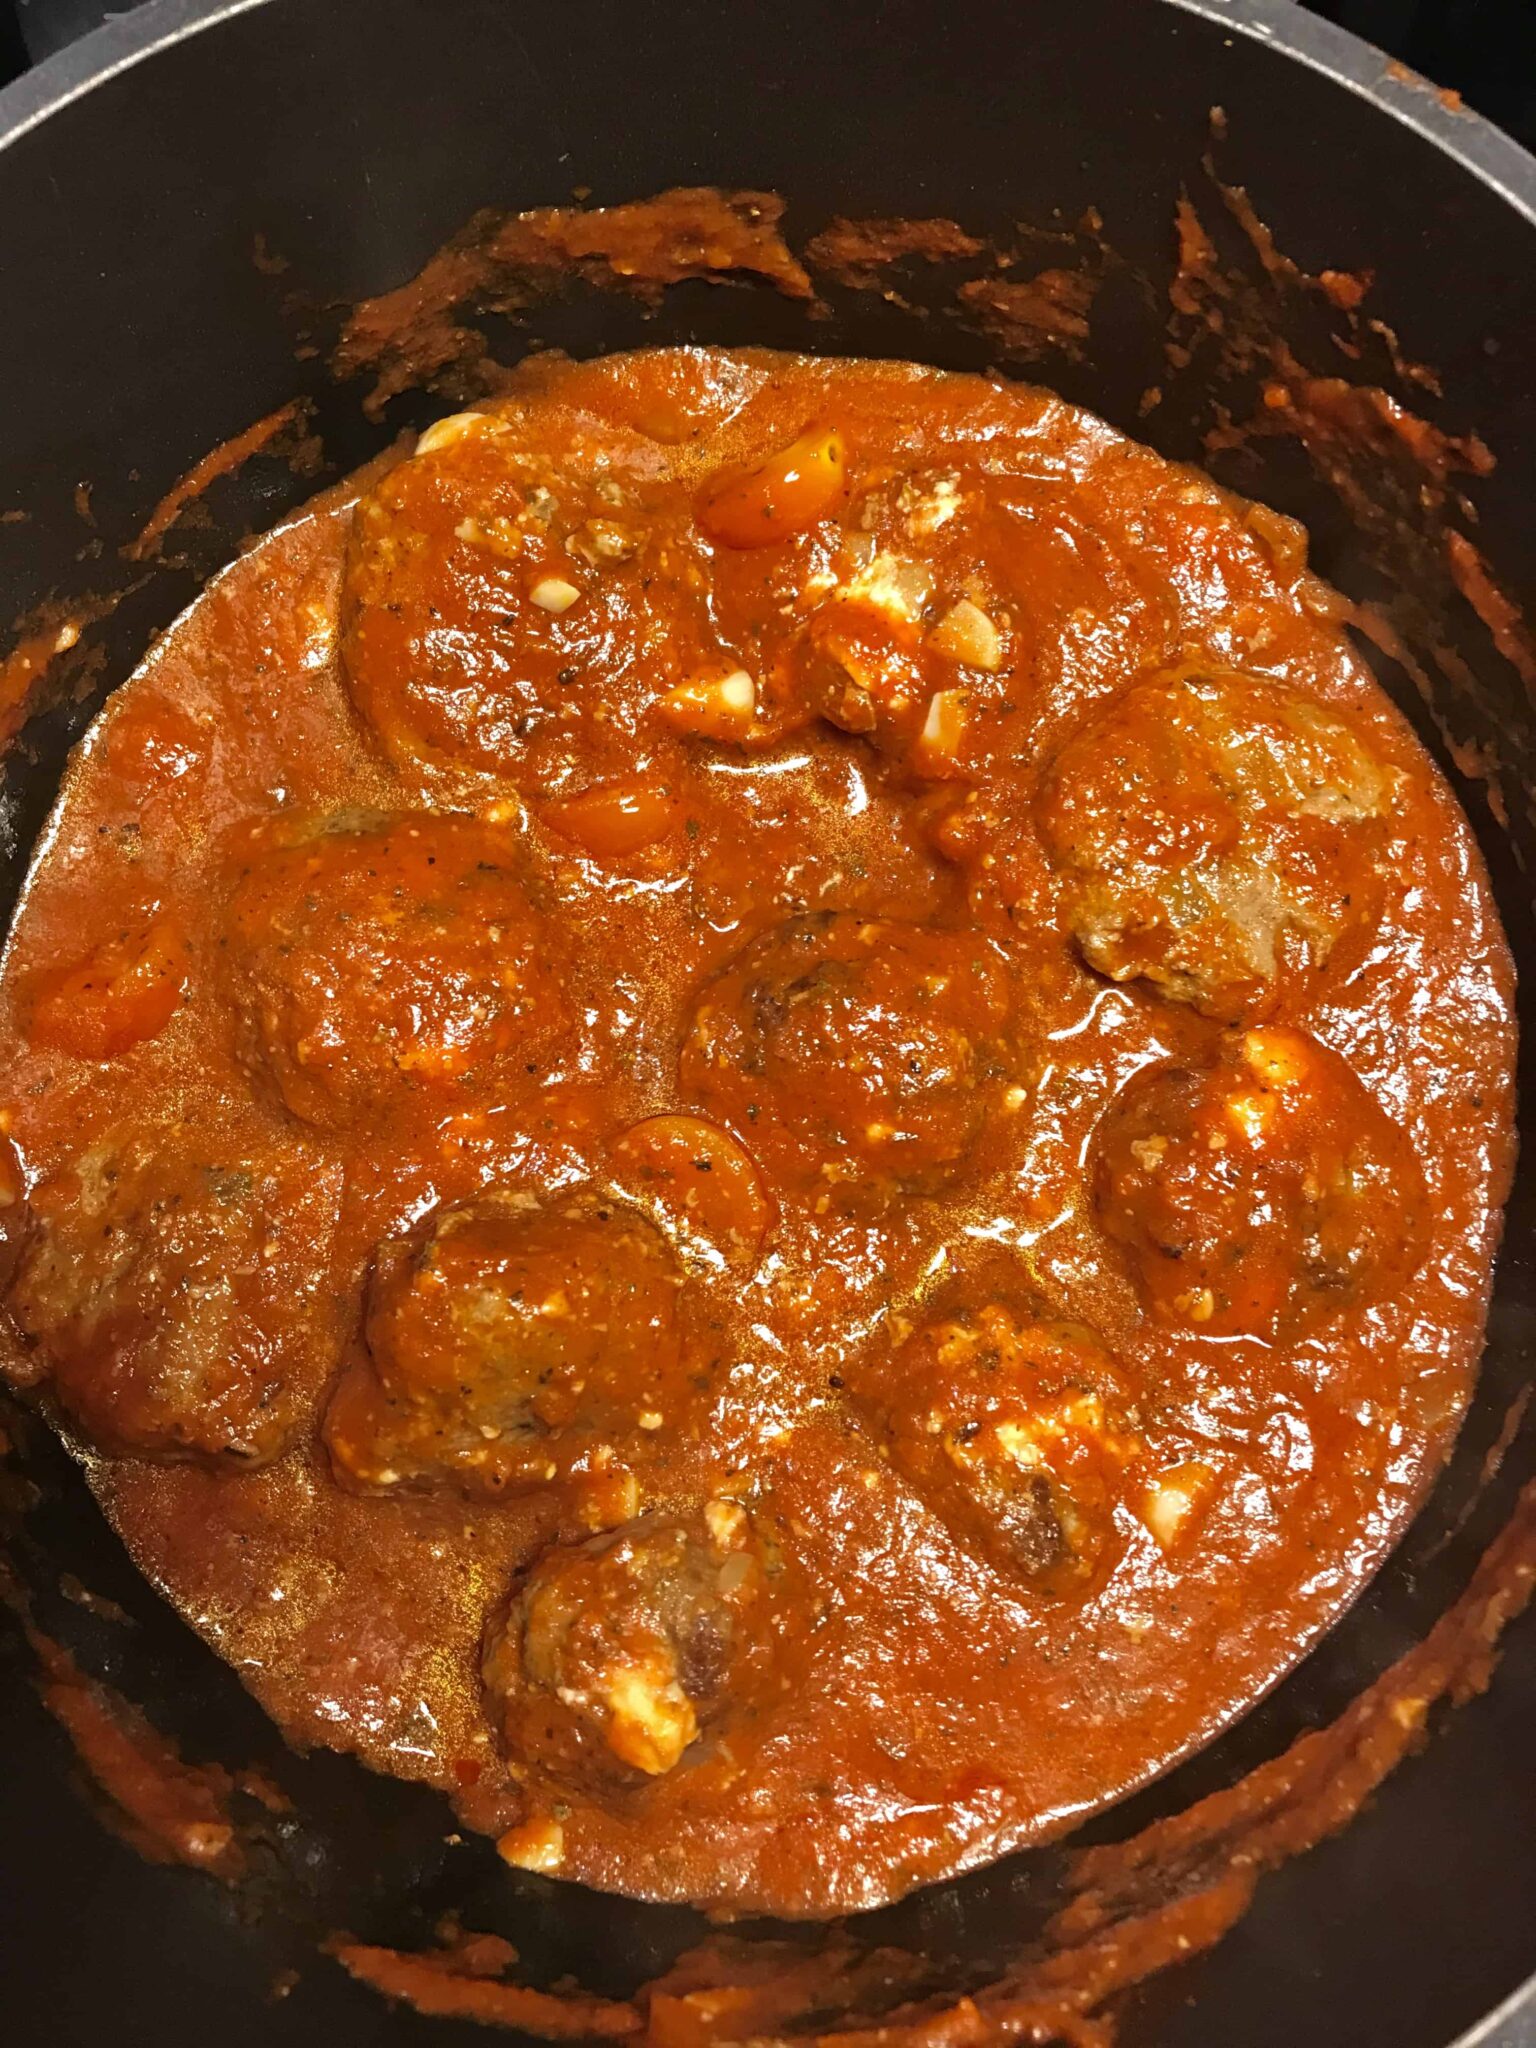 Davinas fetaostfyllda köttbullar i italiensk tomatsås.